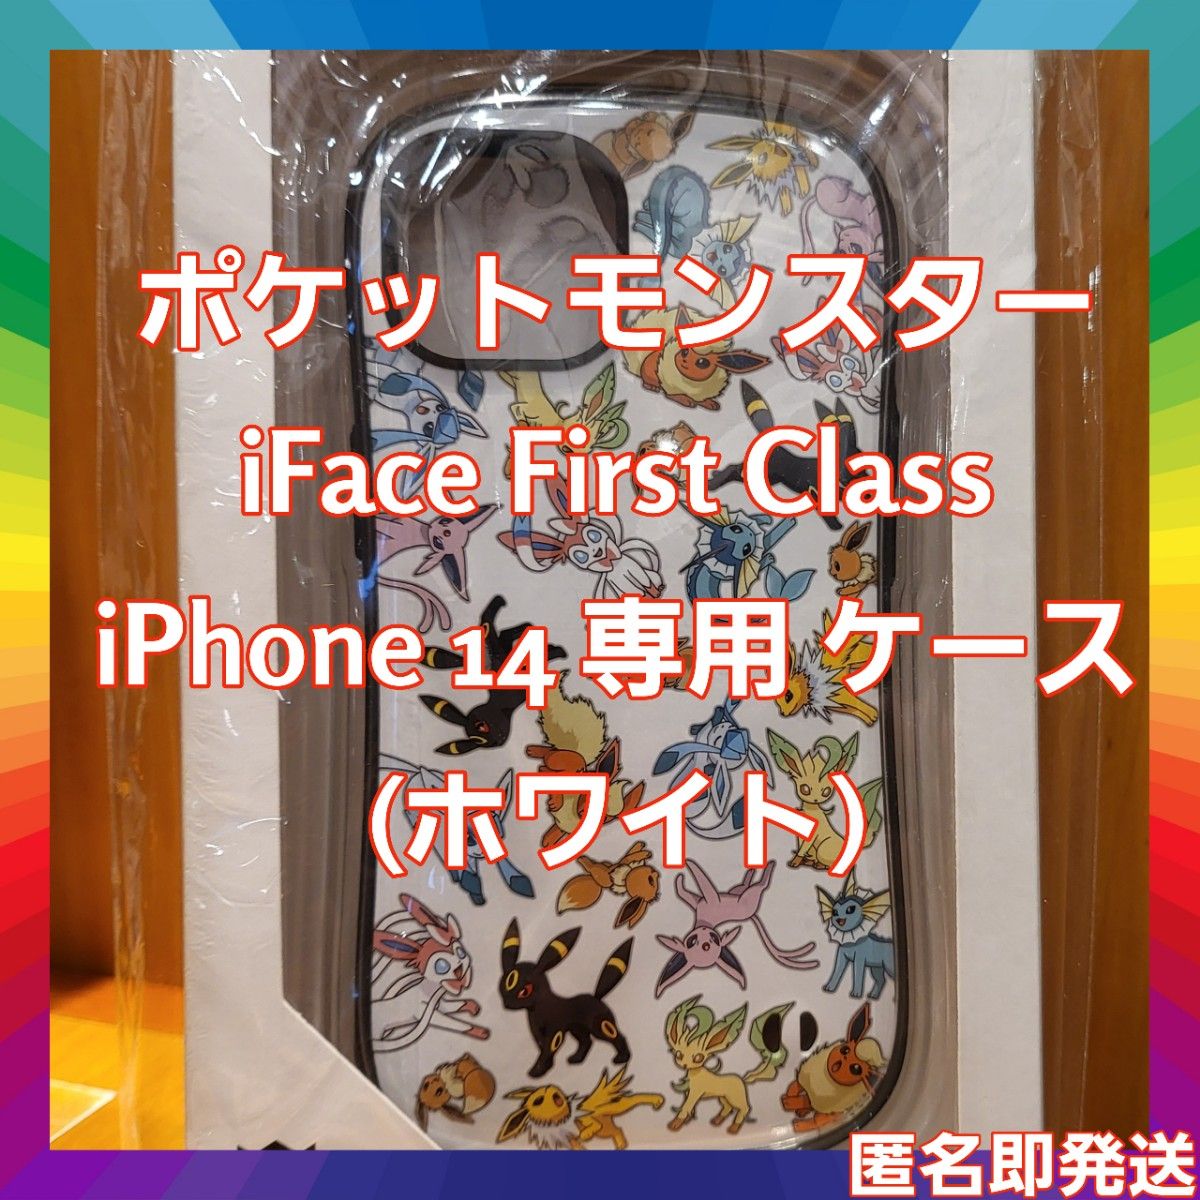 ポケットモンスター/ポケモン iFace First Class iPhone 14 専用 ケース (ホワイト) 